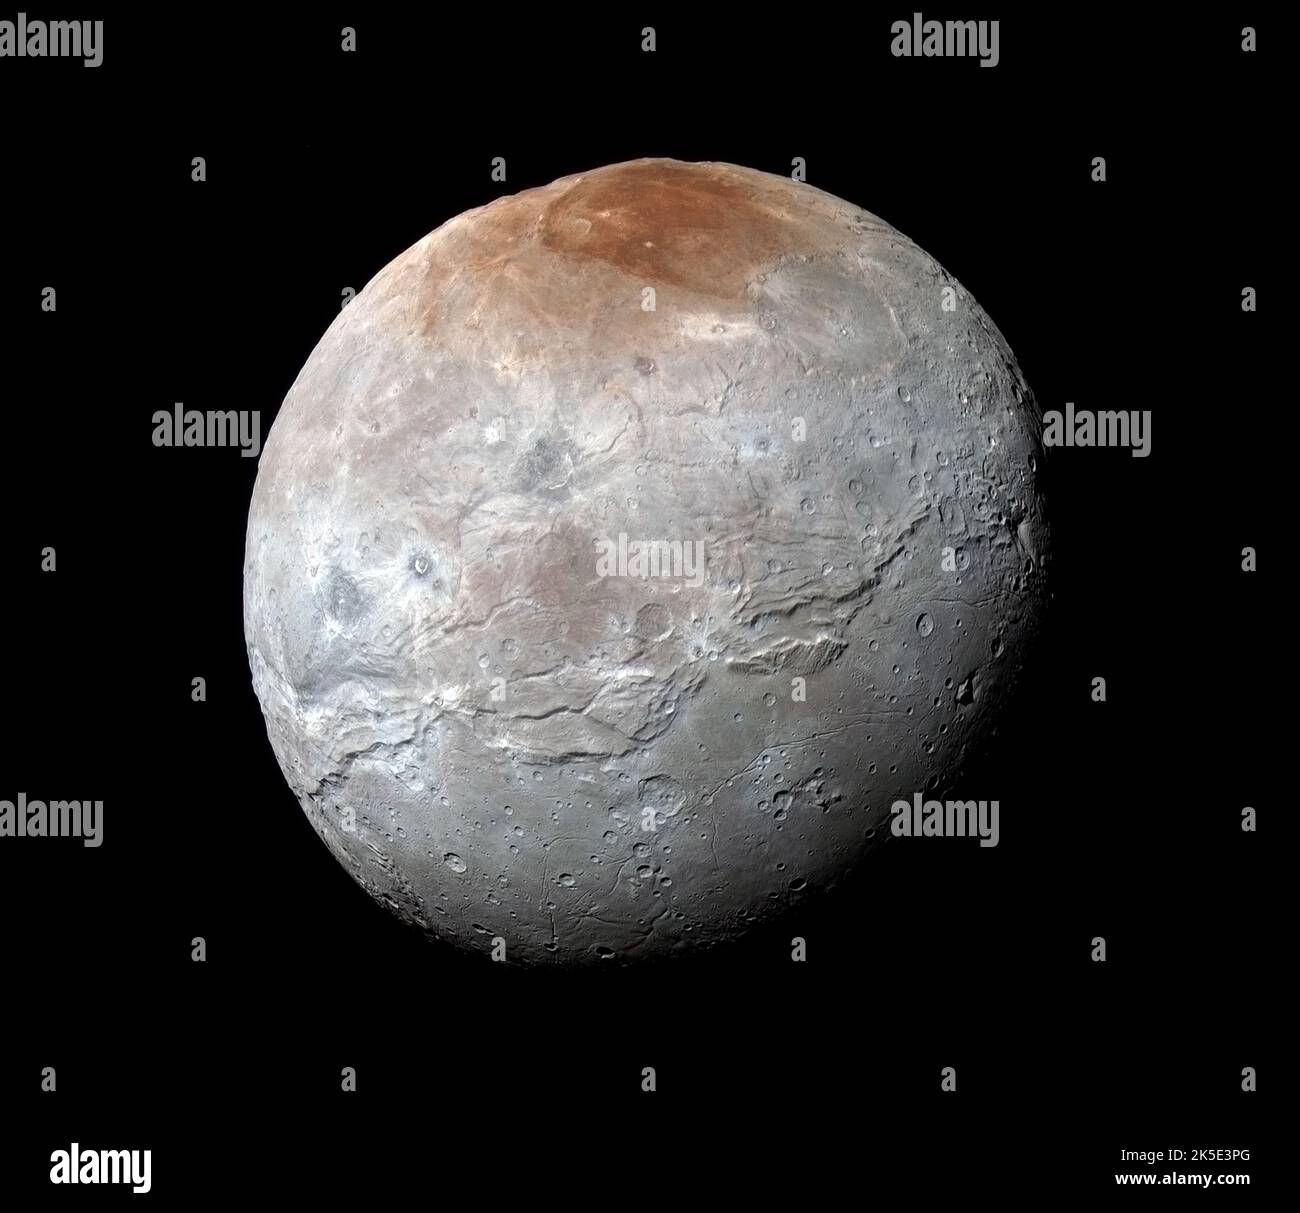 Immagine a colori dettagliata di Charon, la più grande delle lune di Plutone, raffigurata dalla sonda spaziale New Horizons il 14 luglio 2015 . Charon è la luna più grande rispetto al suo pianeta nel sistema solare. Una versione ottimizzata e migliorata di un'immagine originale della NASA: Credit: NASA Foto Stock